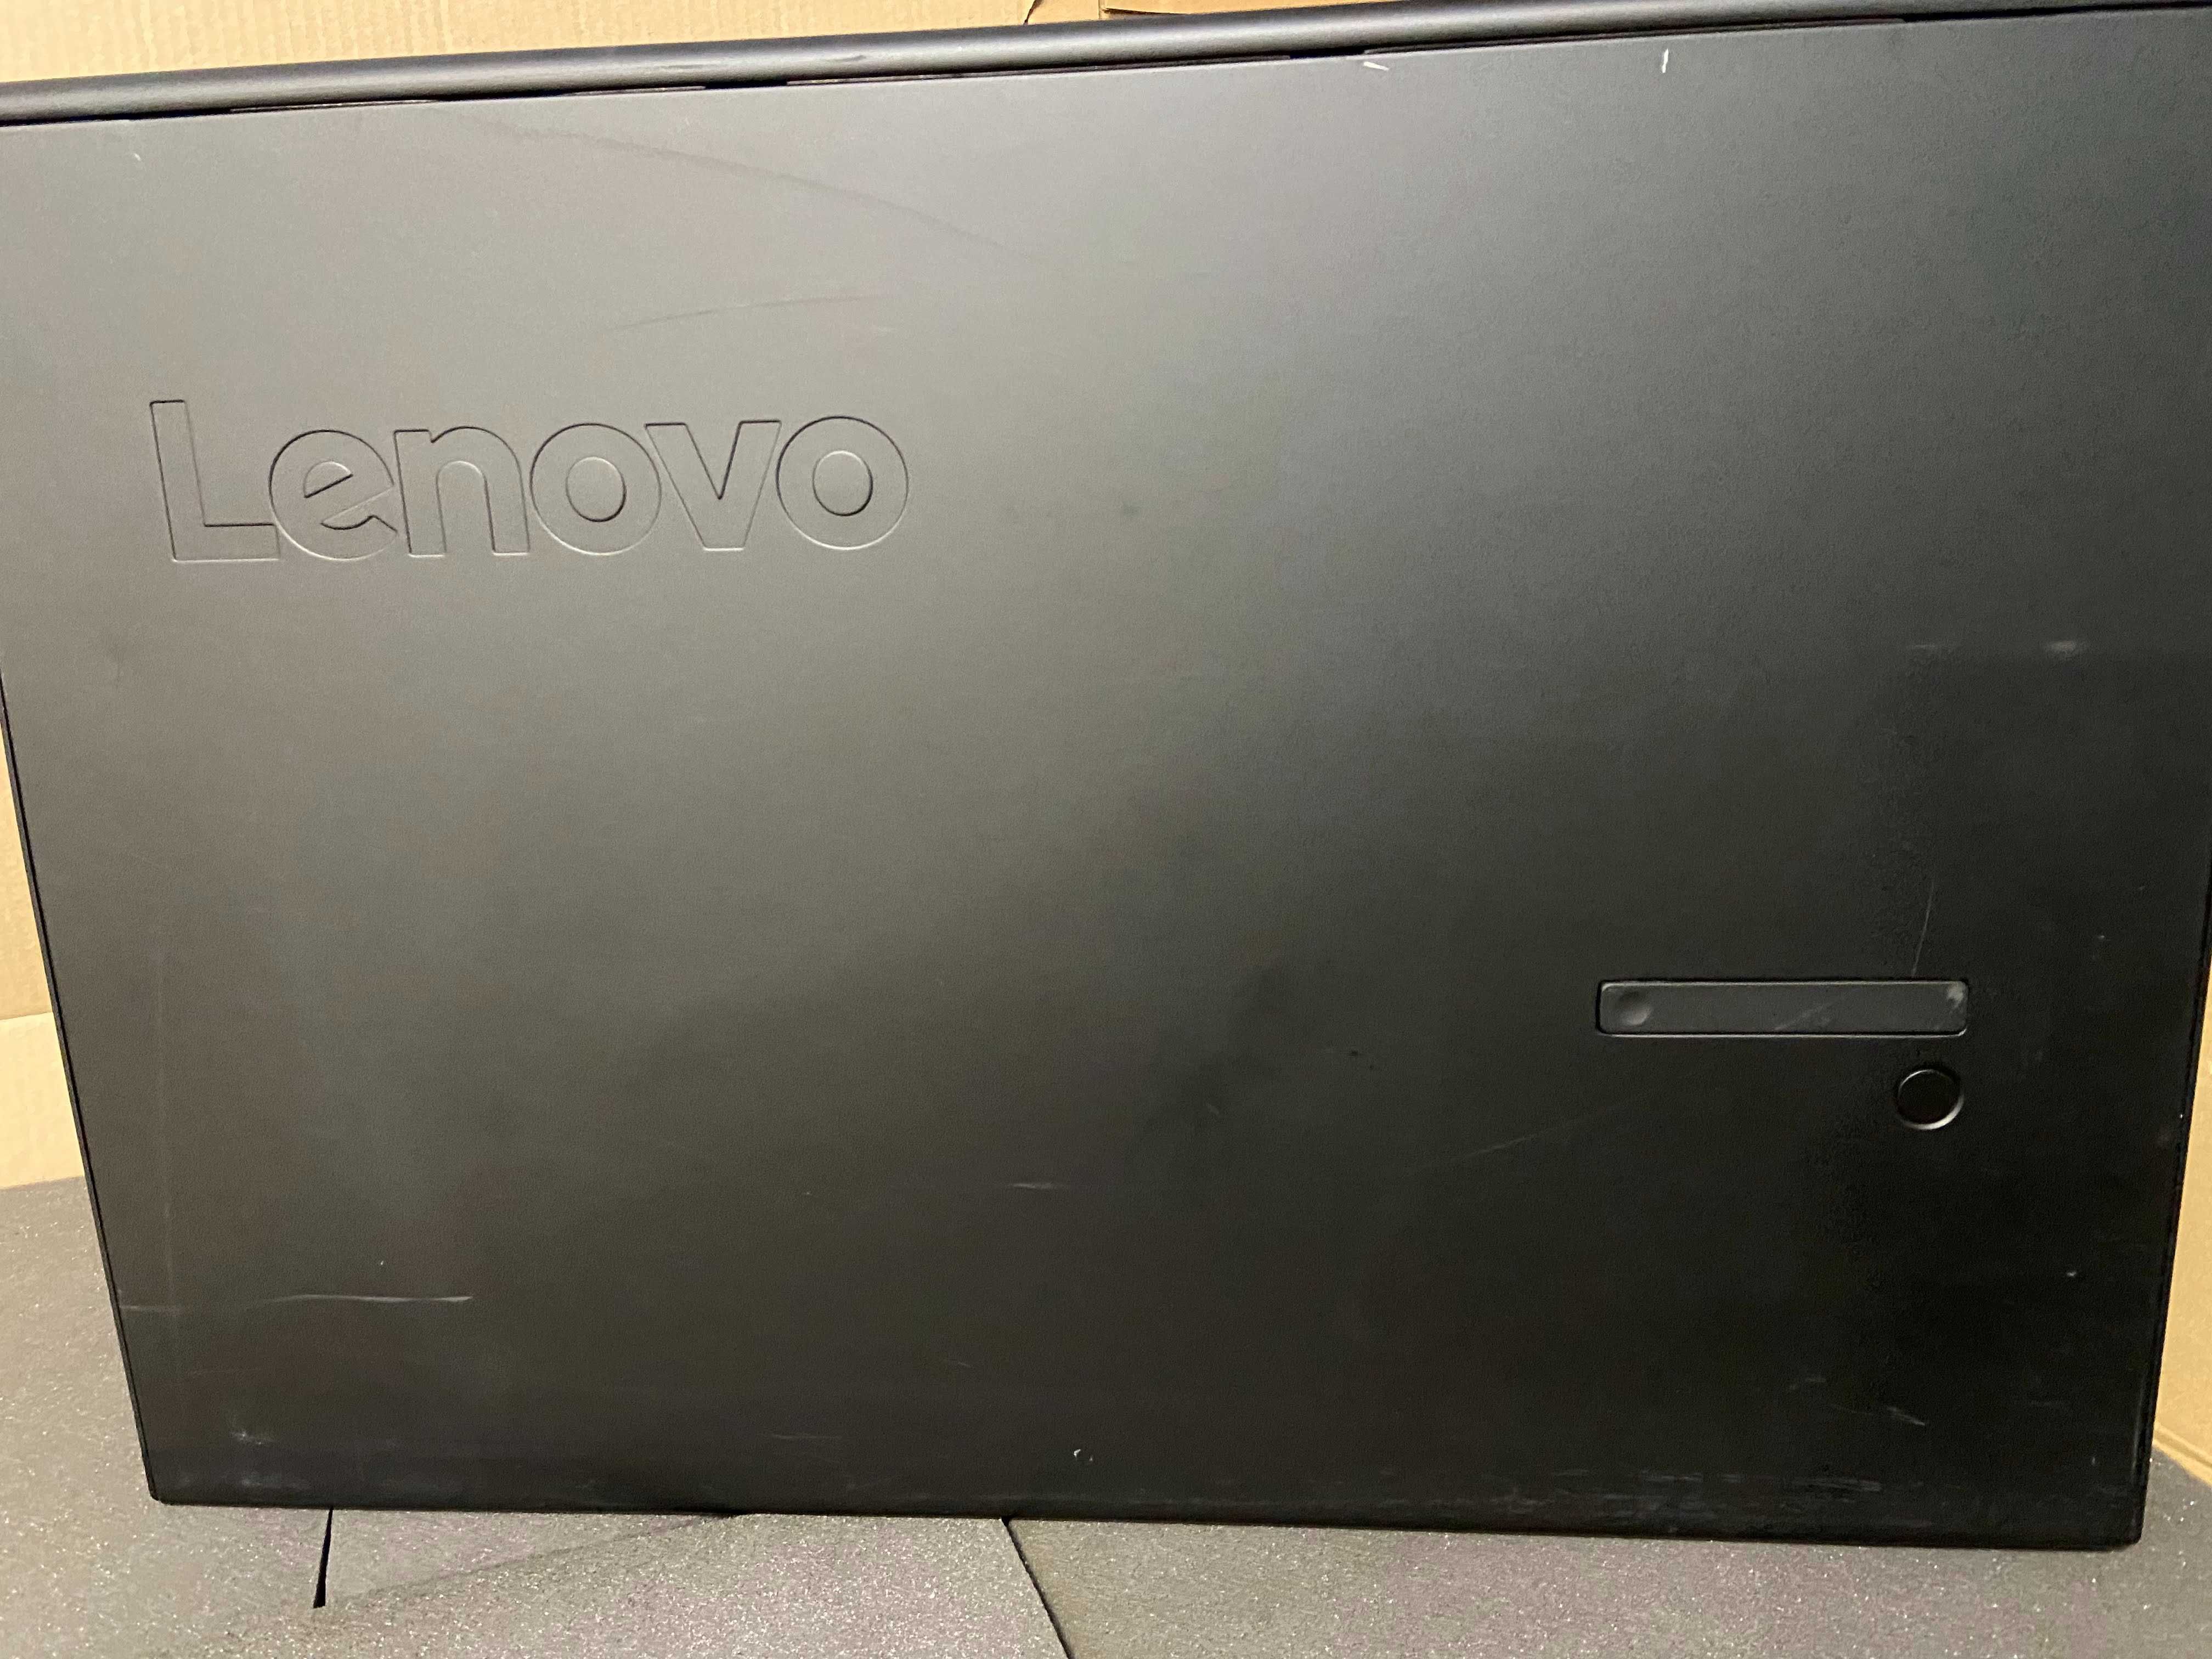 Lenovo P910 2* Xeon E5-2680 v4, 64GB RAM, Quadro M4000, 512GB SSD